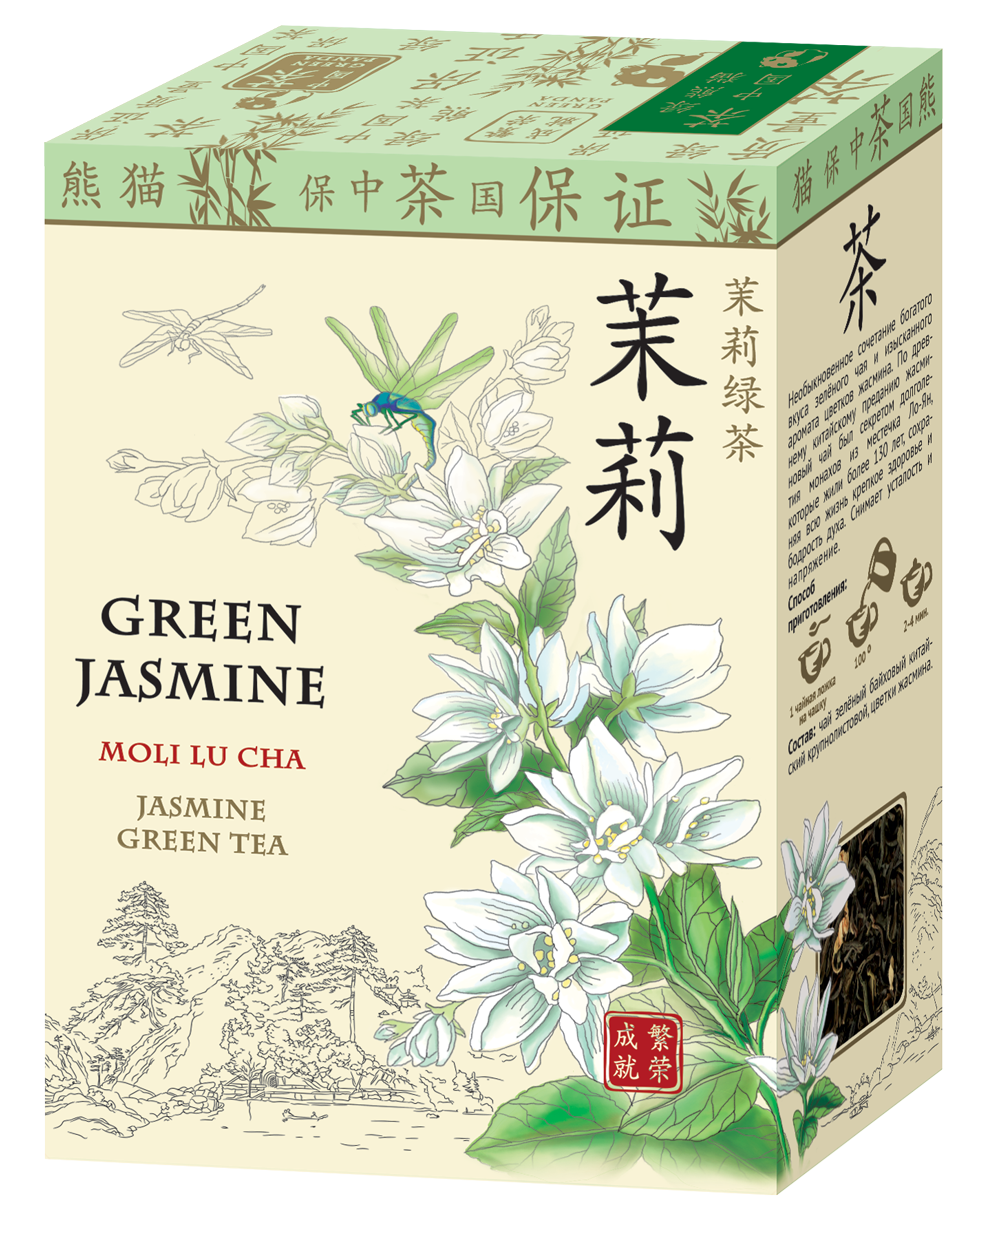 Зеленый жасминовый чай китайский. Китайский зеленый чай с жасмином. Чай зелёный китайский ча Бао Люй ча 100г. Китайский чай с жасмином в зеленой упаковке.